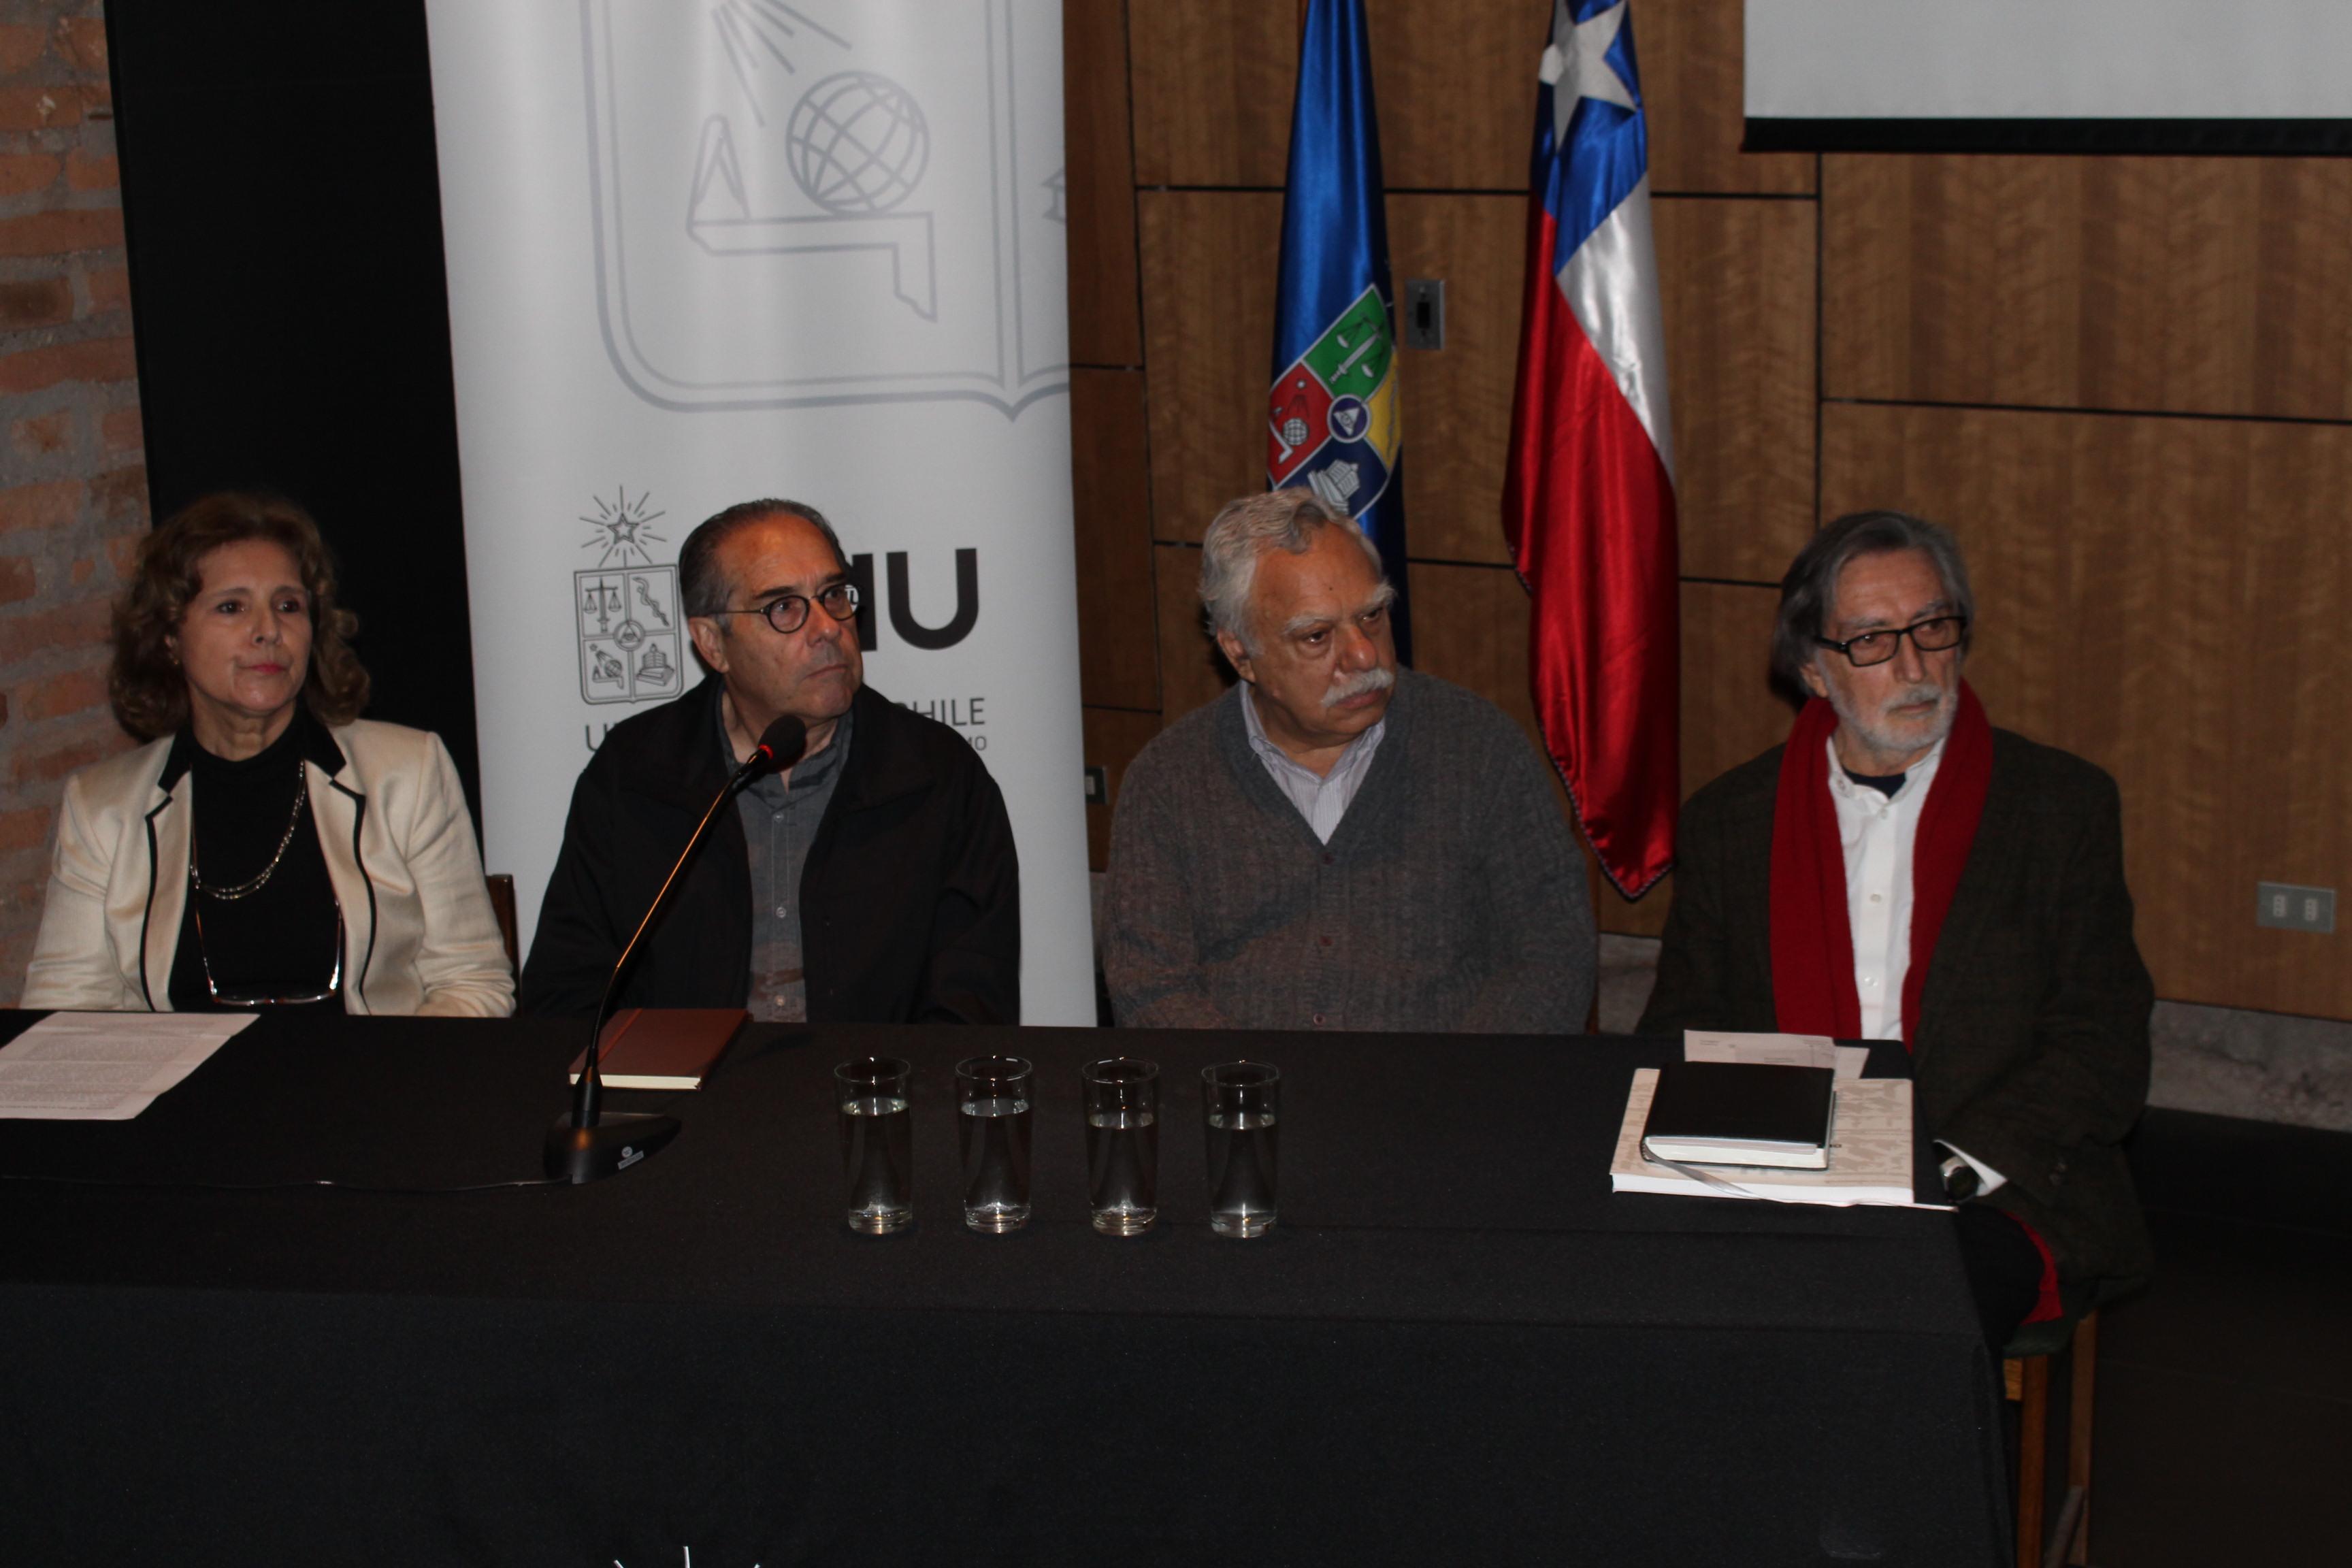 De izquierda a derecha: María Isabel Pavez, Emilio Sessa, Alberto Gurovich y Alfonso Raposo.